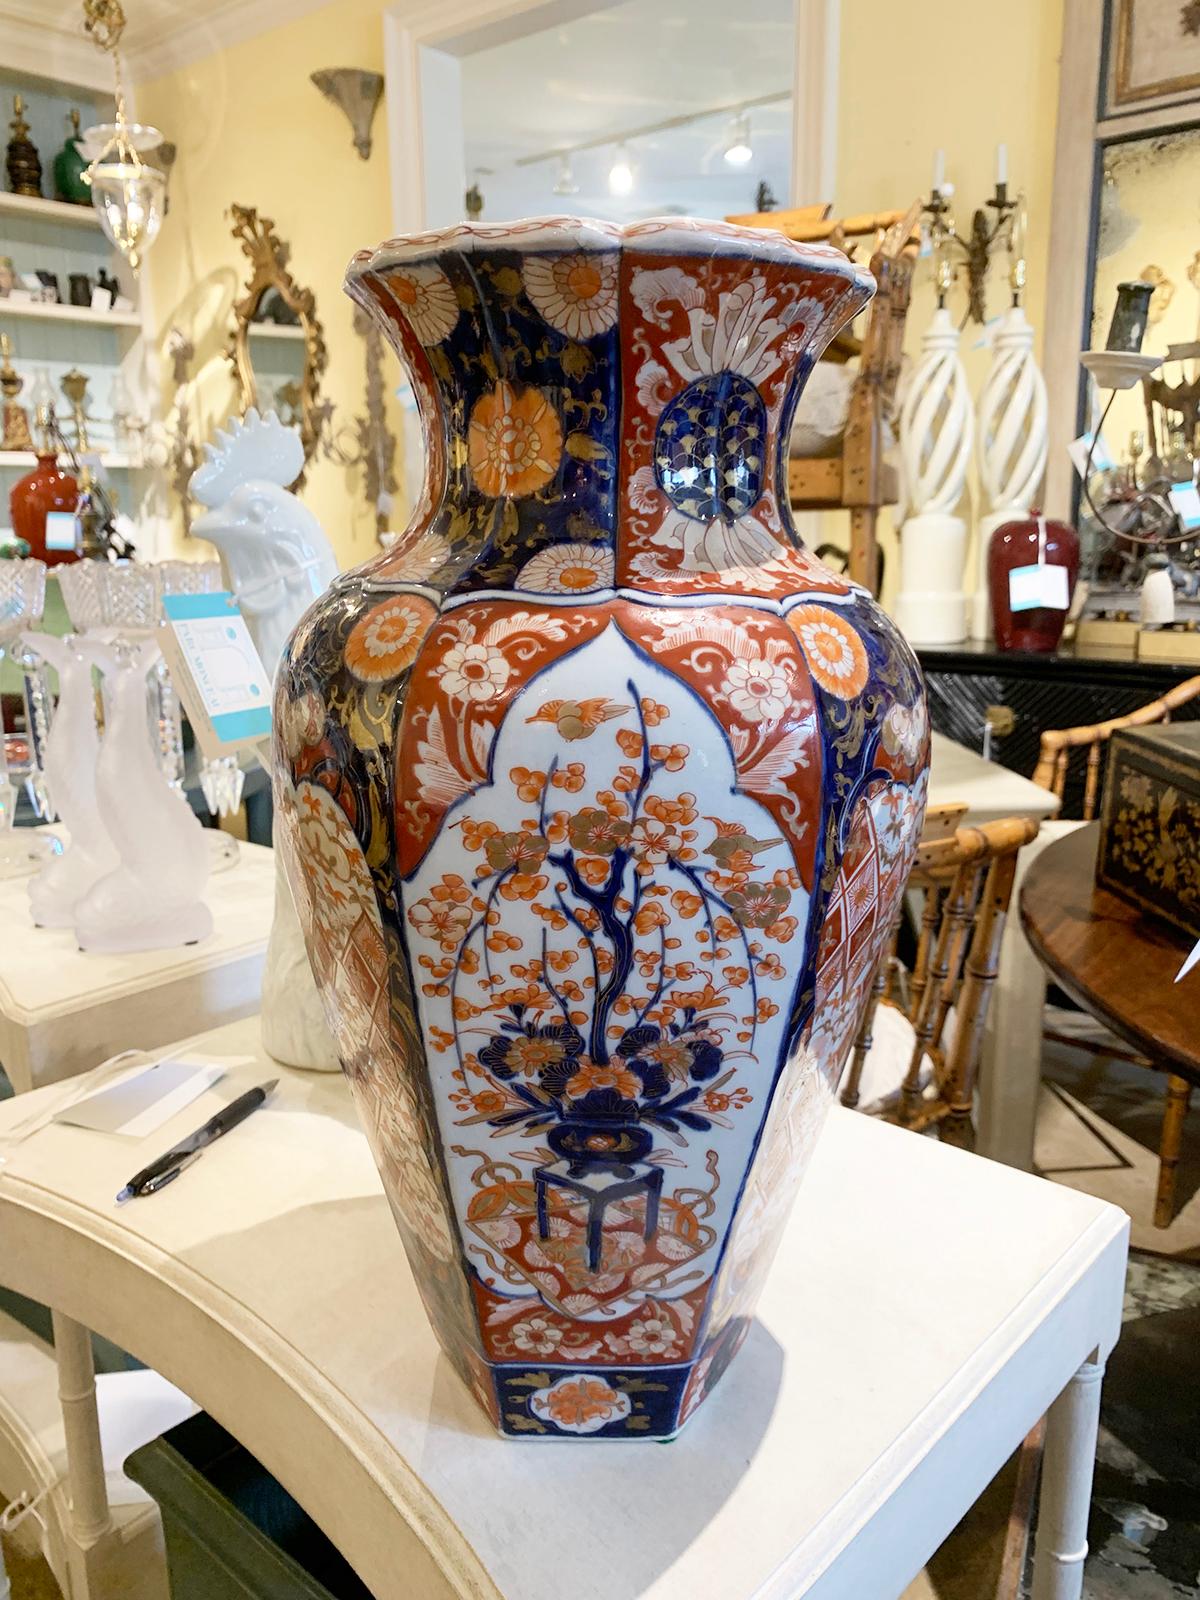 19th century Japanese Imari ware porcelain vase, large scale